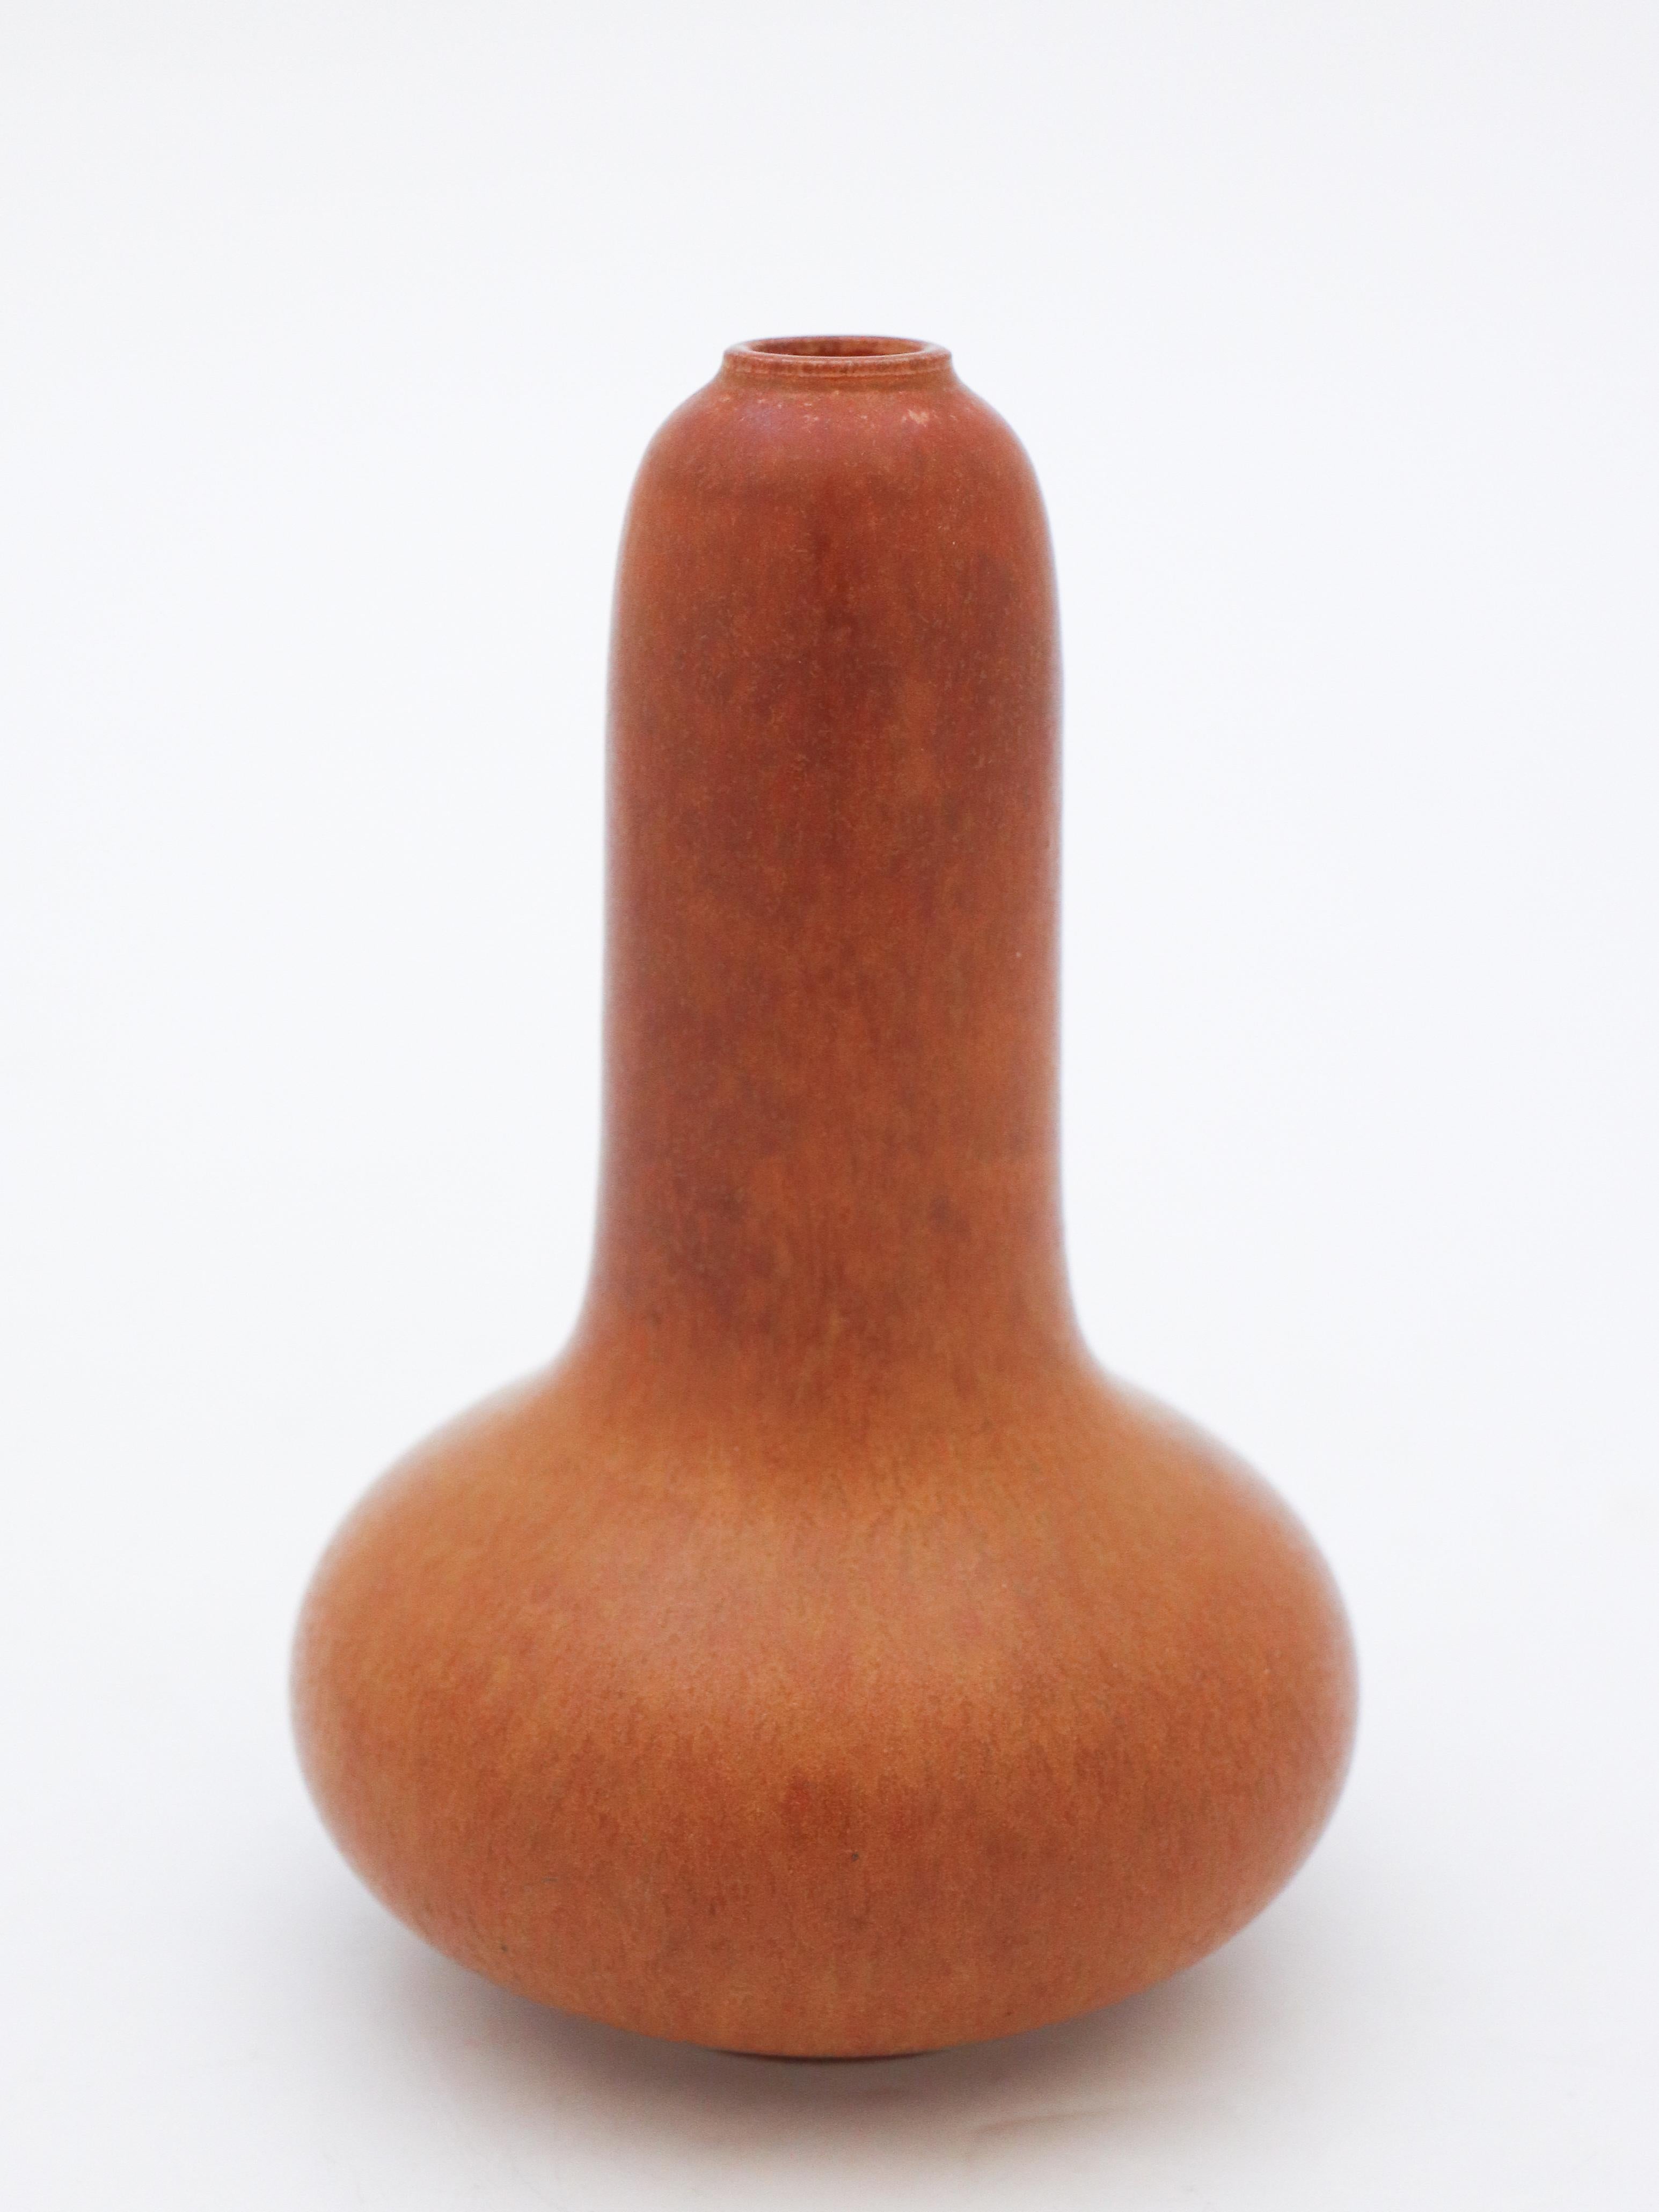 Eine schöne braune Vase, entworfen von Gunnar Nylund bei Rörstrand, sie ist 14 cm hoch und hat eine schöne braune Harpelglasur, sie ist in neuwertigem Zustand und als 1:st Qualität gekennzeichnet.

 Gunnar Nylund wurde 1904 in Paris geboren. Seine